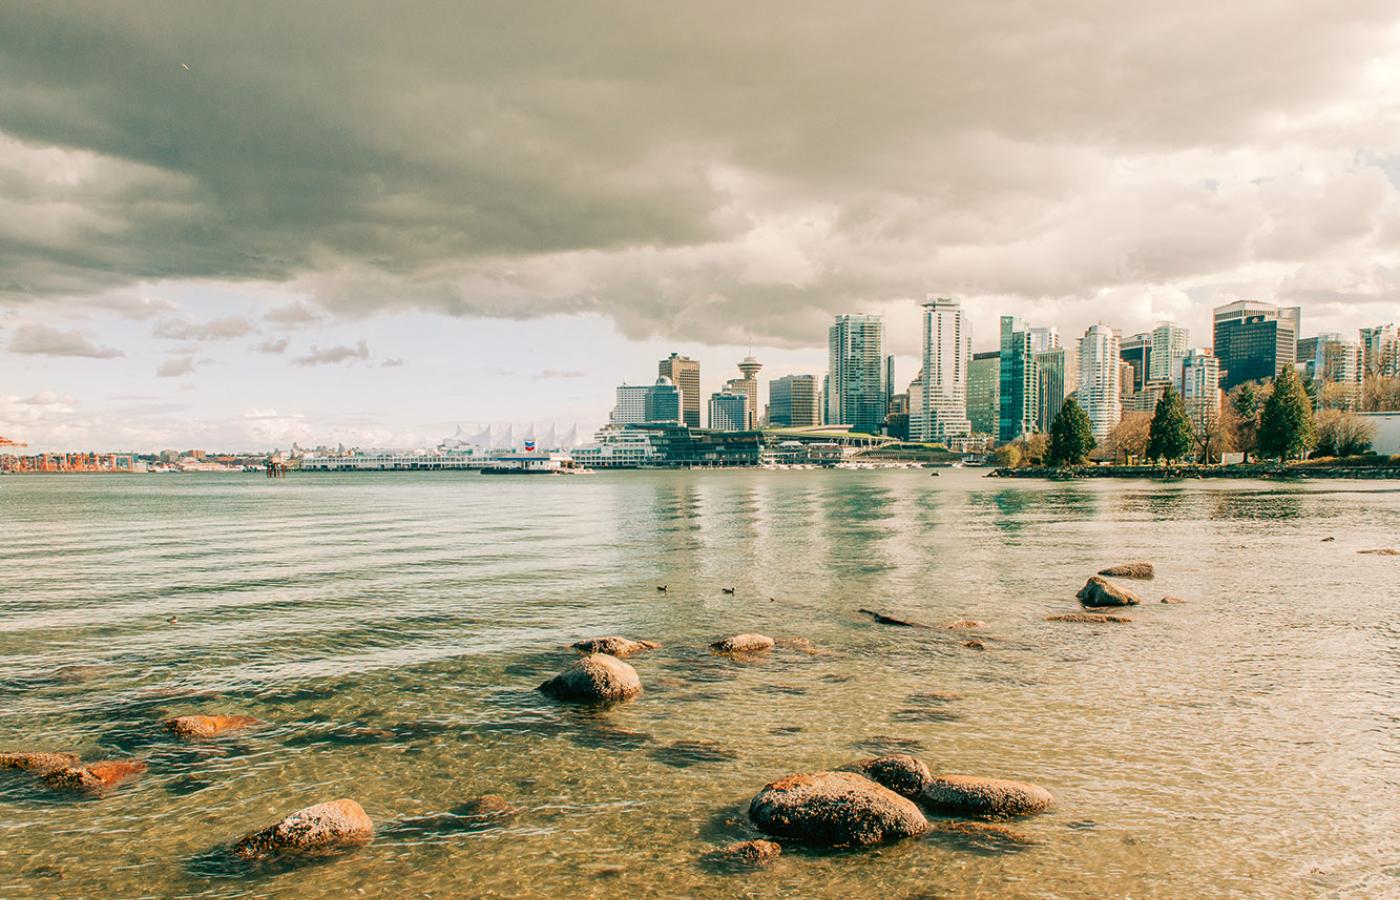  Widok na centrum Vancouver. Miasto leży nad zatoką i jest otoczone grzbietami górskimi. To najbardziej hipisowska część Kanady. (Fot. Monika Grzelak)